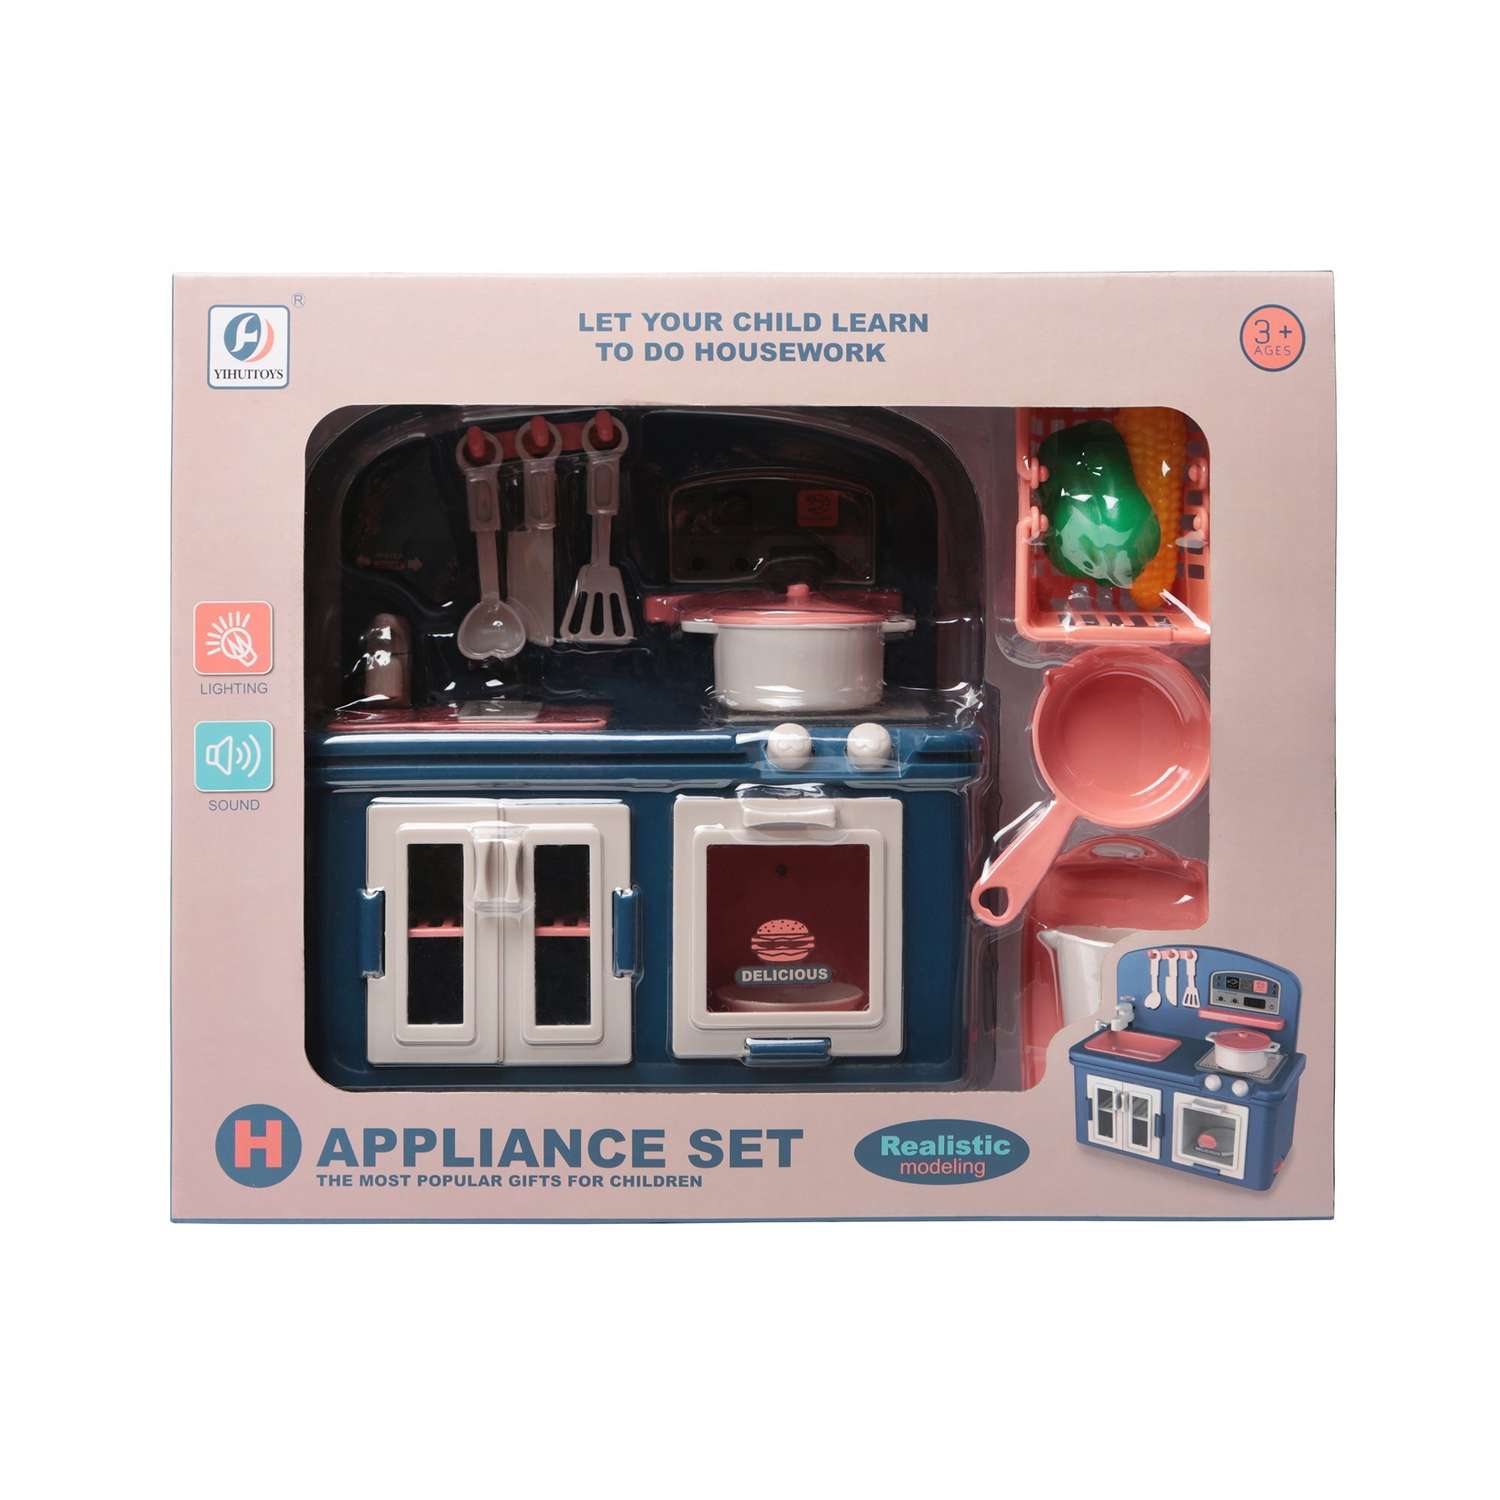 Игровой набор Кухня S+S игрушечная плита с духовкой на батарейках - фото 3